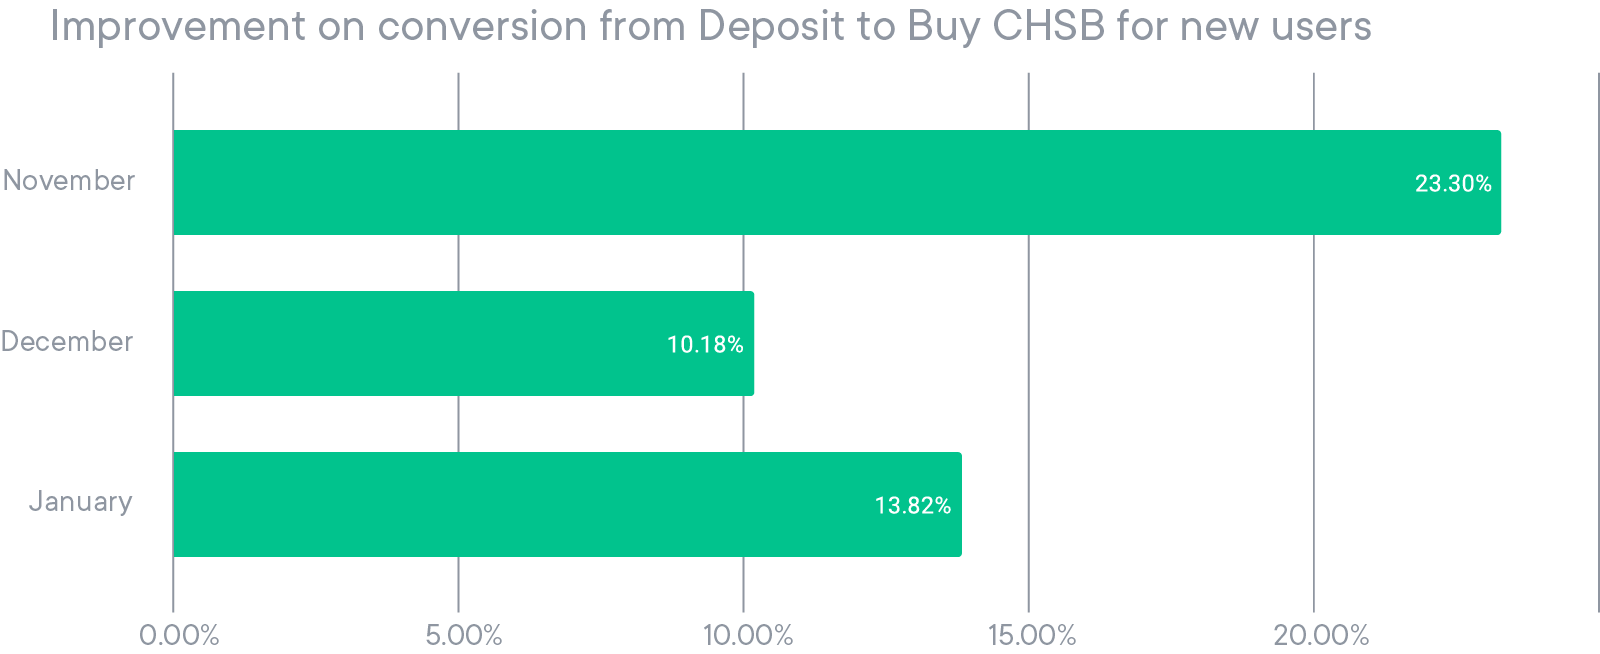 Amélioration de la conversion dépôt → achat de CHSB pour les nouveaux utilisateurs